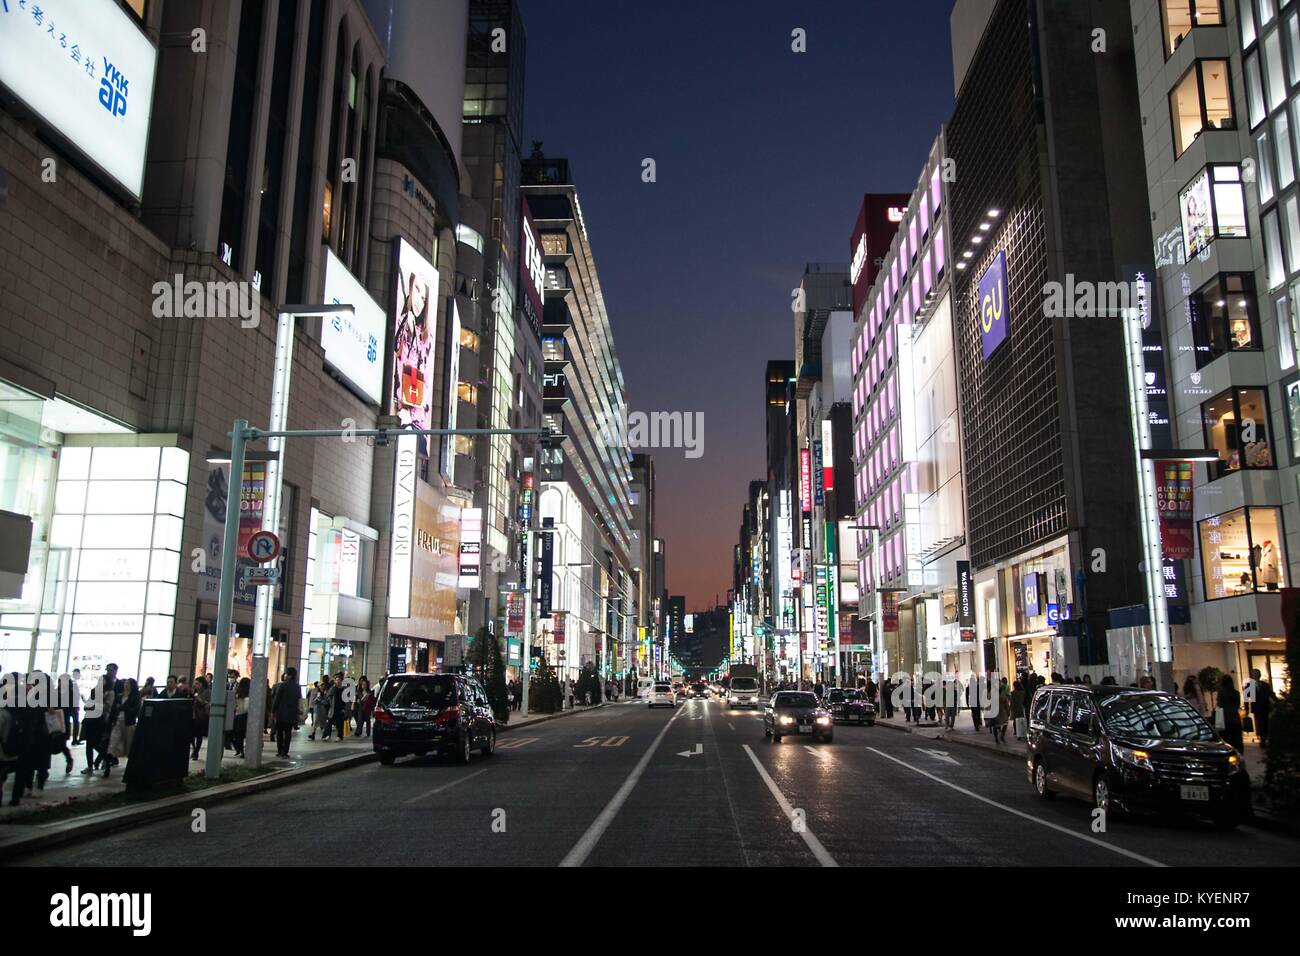 Vue nocturne de la ville animée de devantures et des signes dans la station Ginza, connue pour ses restaurants et bars plus âgés, dans le quartier de Chiyoda à Tokyo, Japon, Novembre, 2017. () Banque D'Images